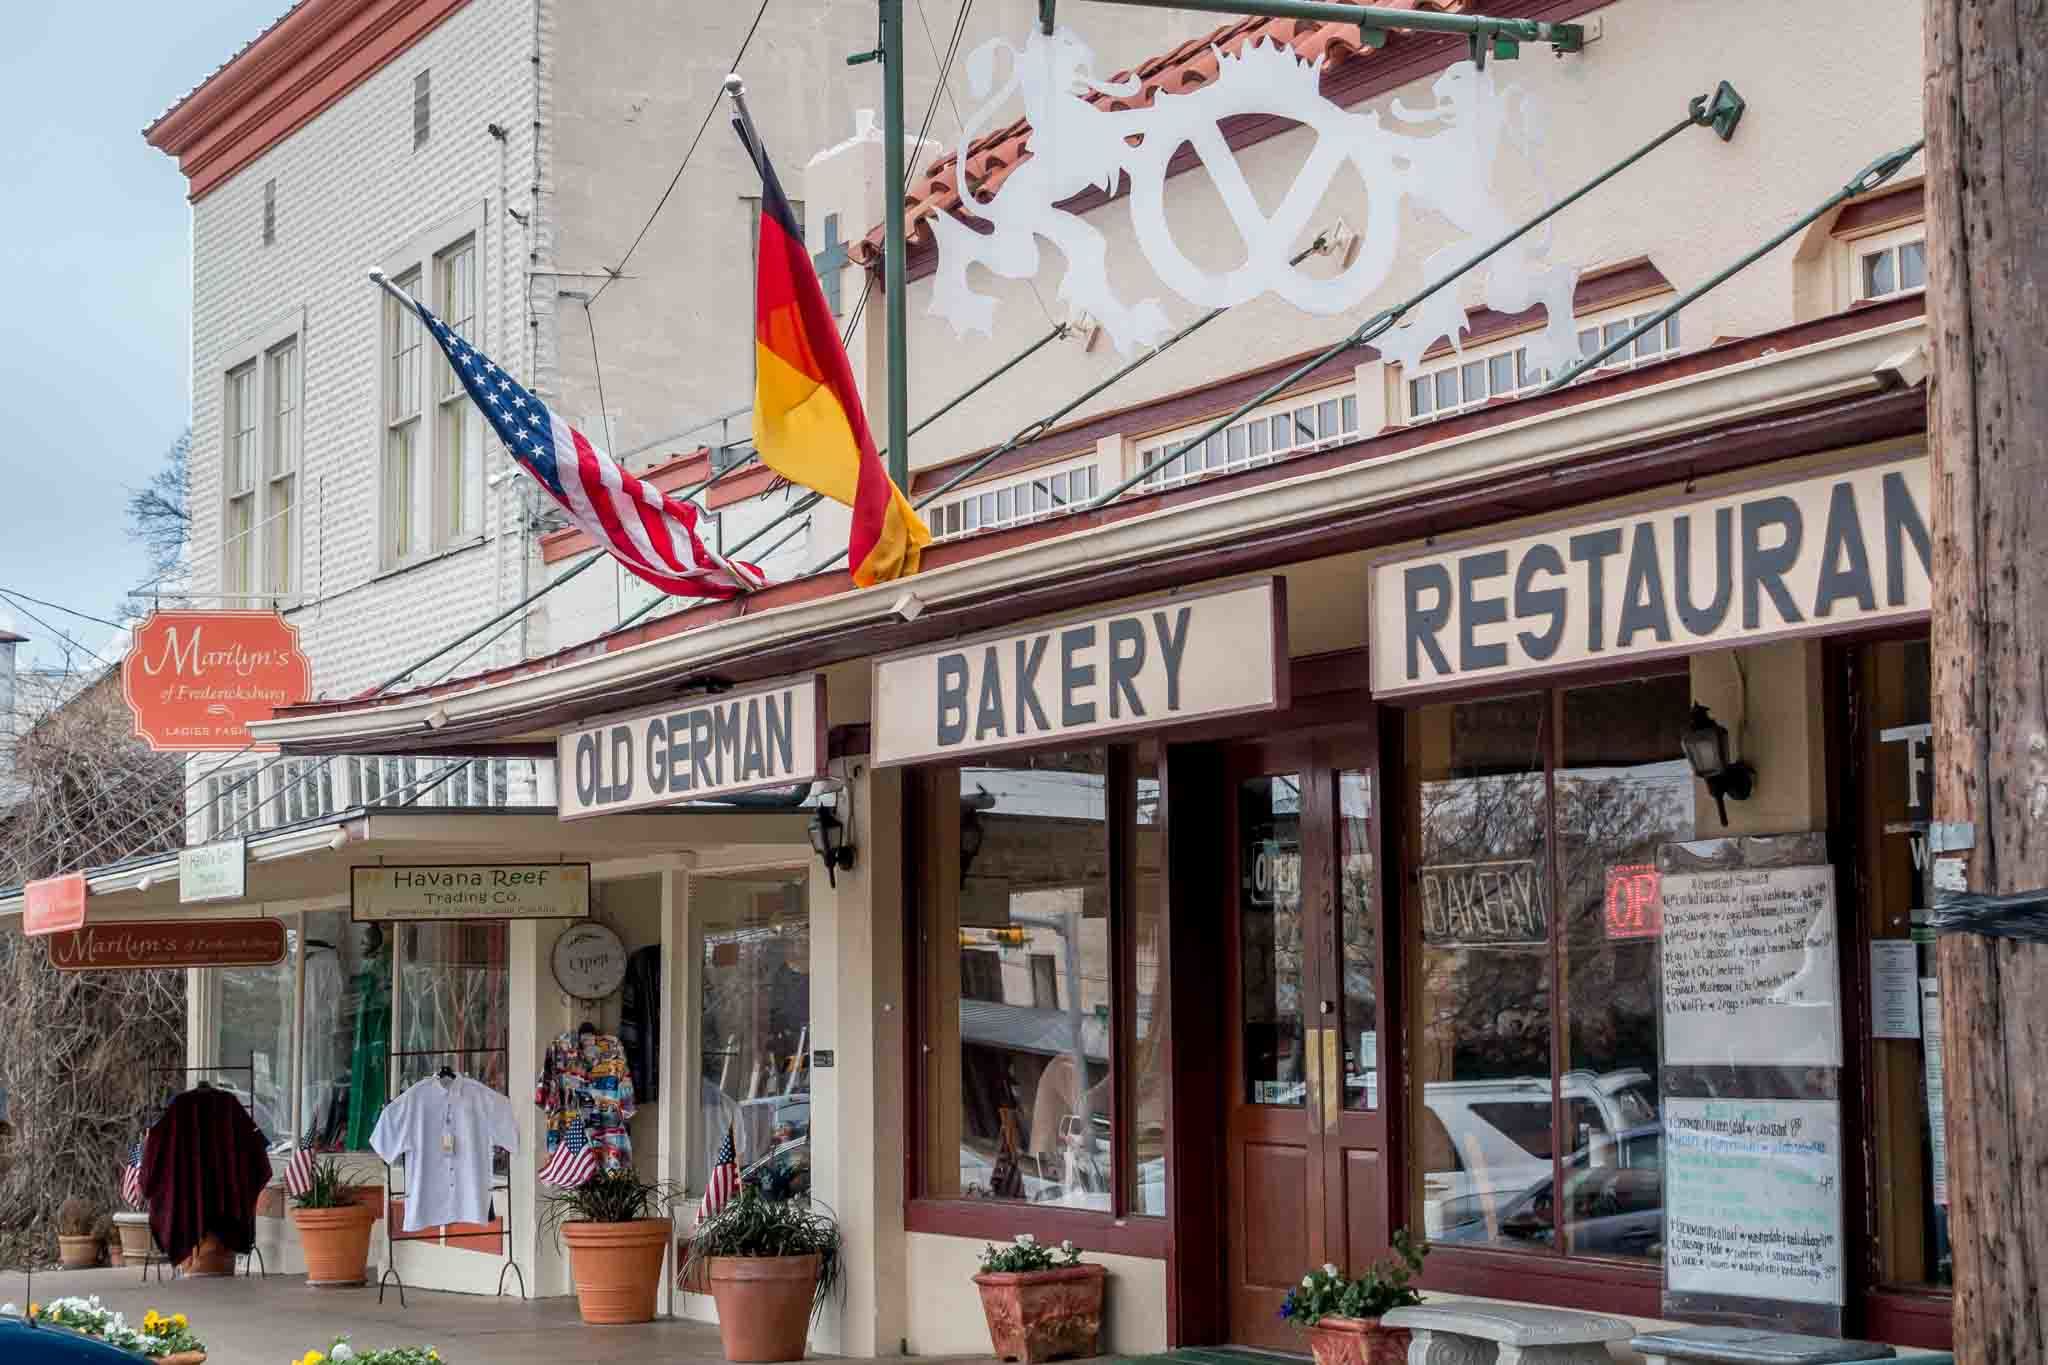 German bakery on Main Street in Fredericksburg TX.